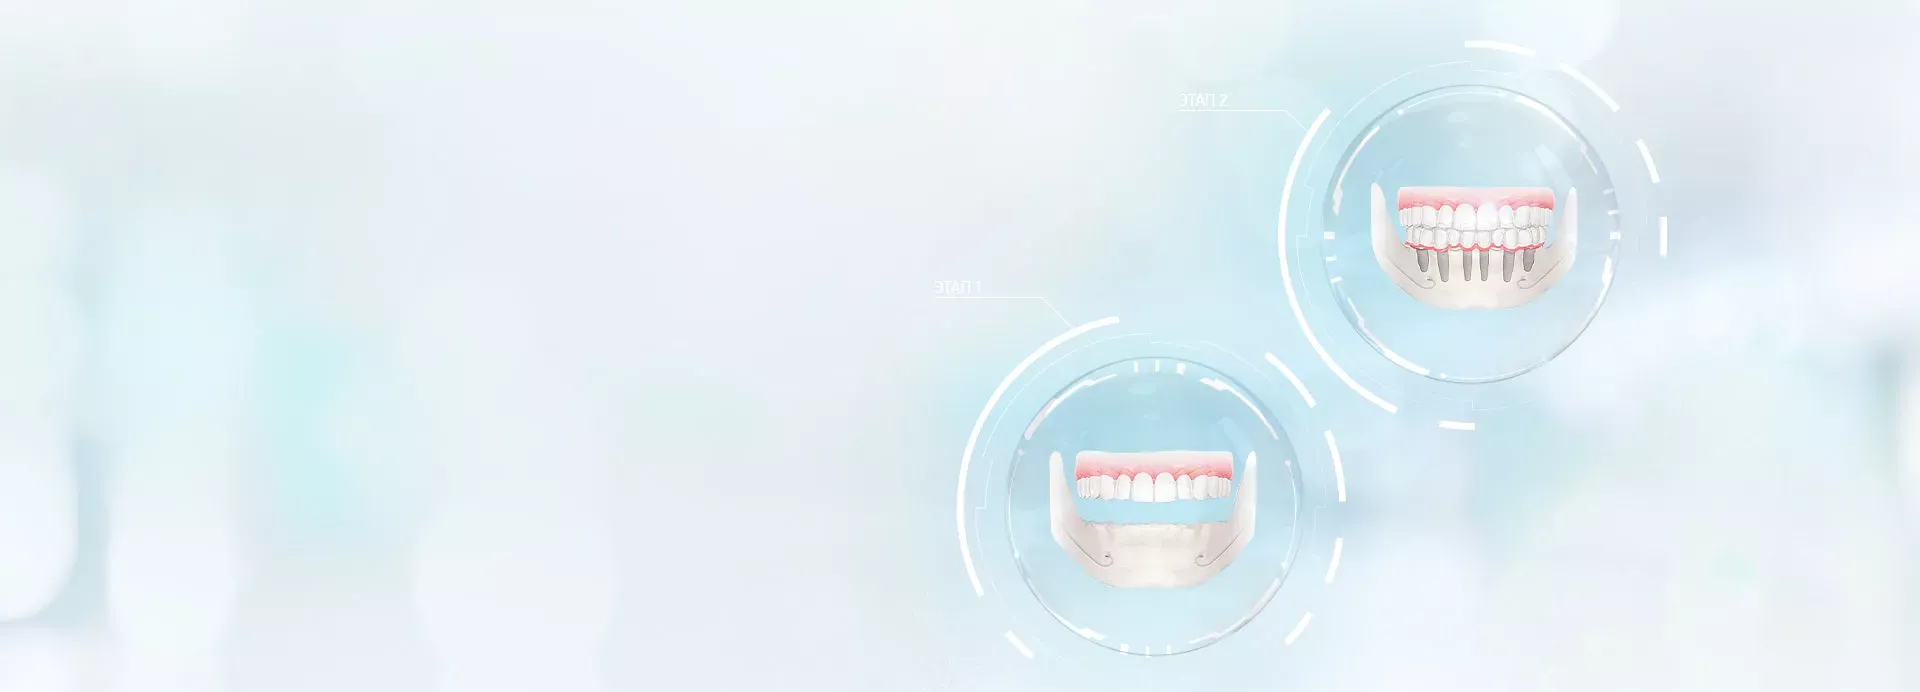 Проведение имплантации зубов с помощью Hi-tech